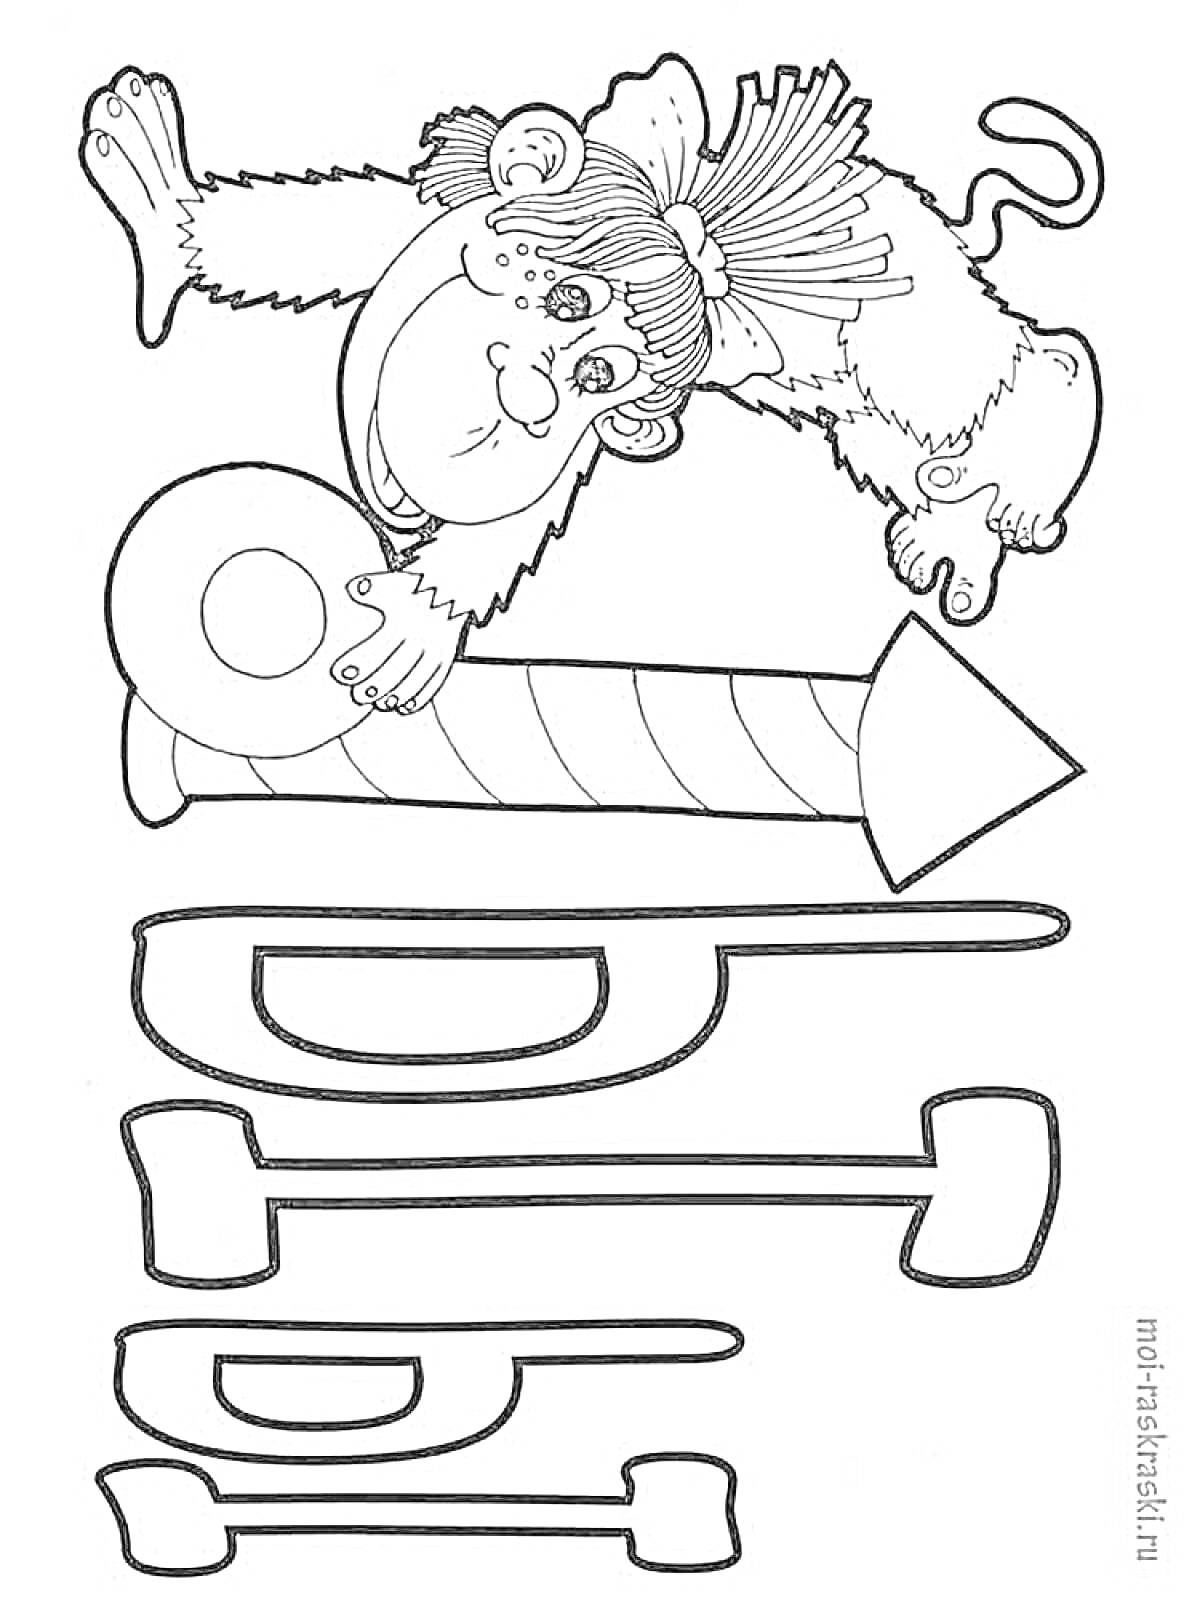 Раскраска Обезьянка рядом с обведенными буквами 